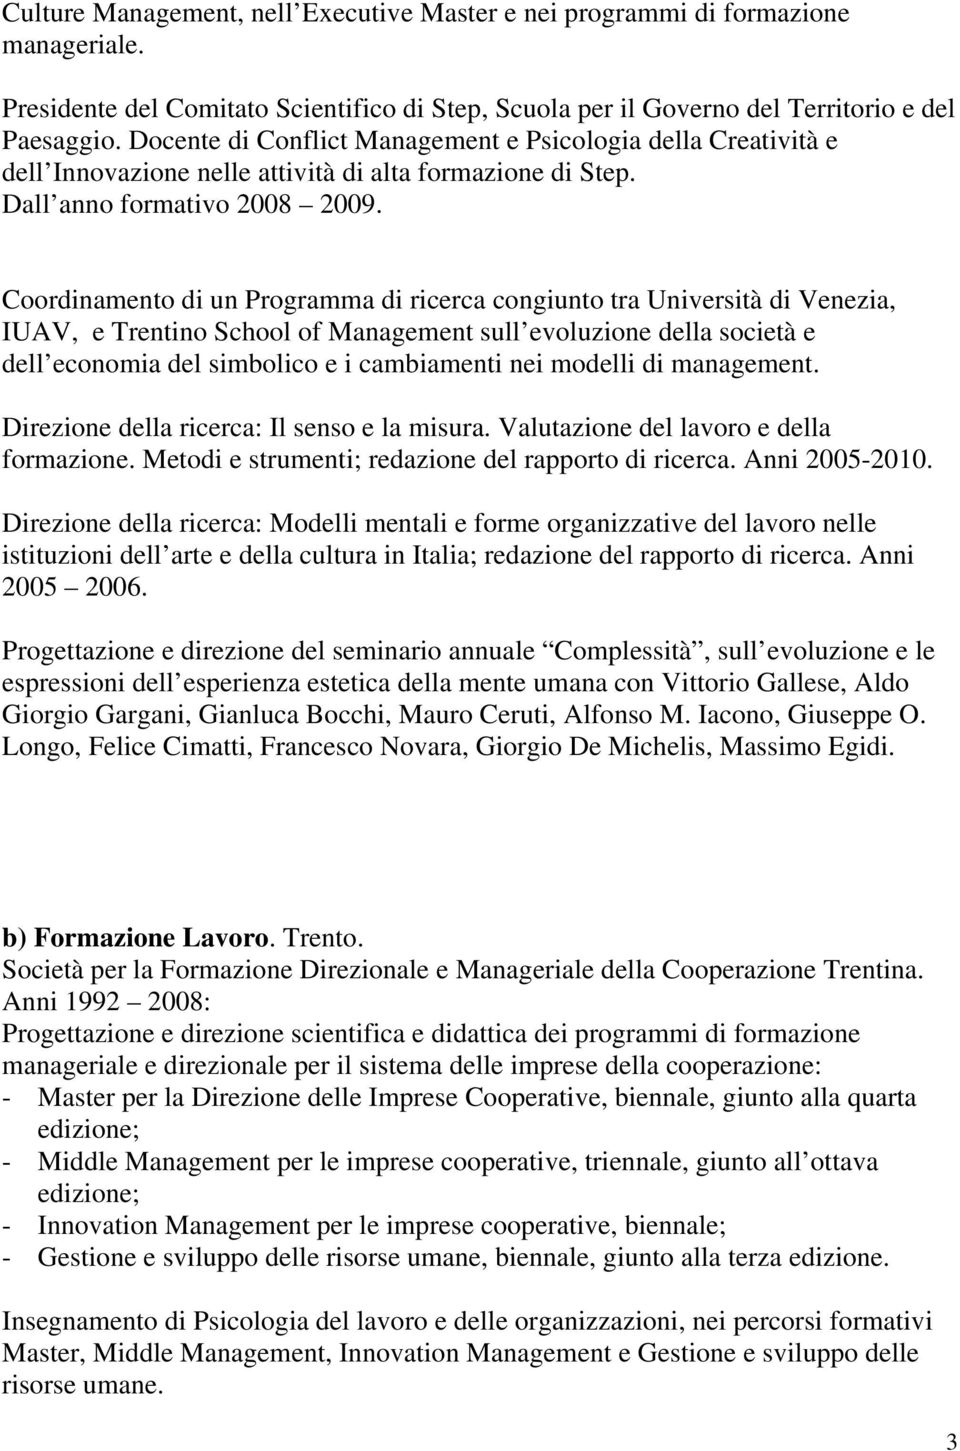 Coordinamento di un Programma di ricerca congiunto tra Università di Venezia, IUAV, e Trentino School of Management sull evoluzione della società e dell economia del simbolico e i cambiamenti nei